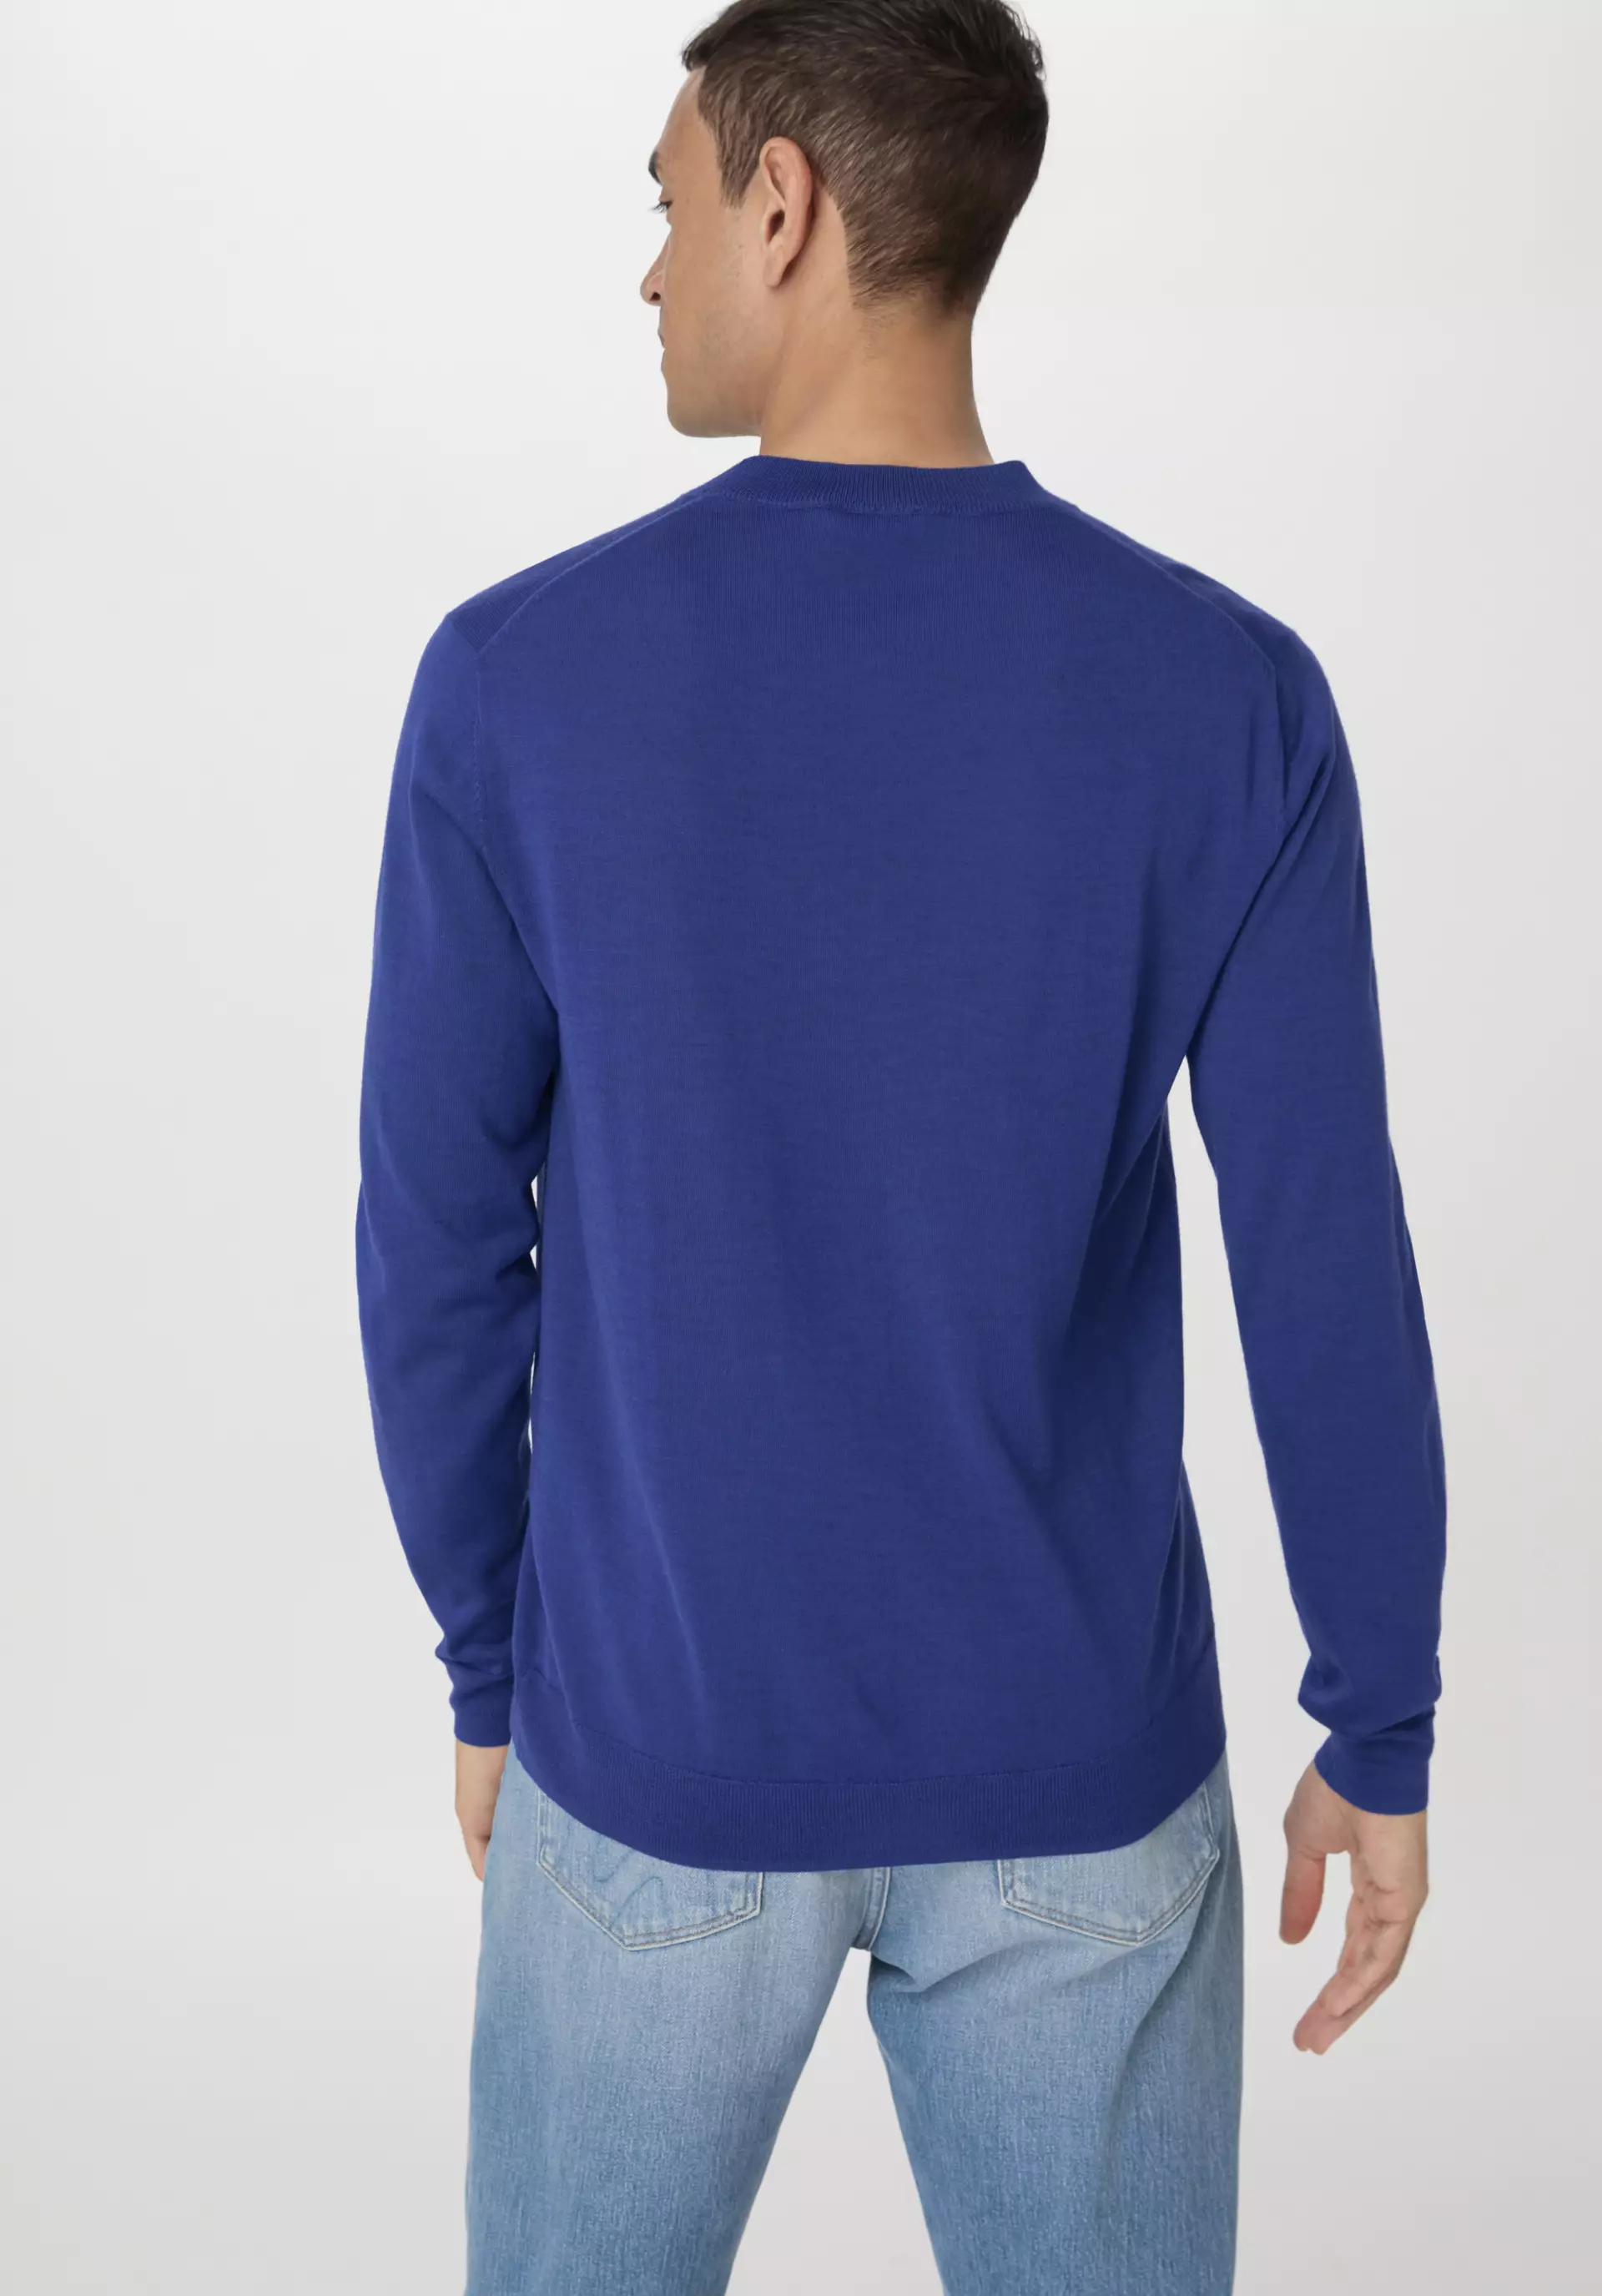 Fine regular sweater made from pure organic merino wool - 3